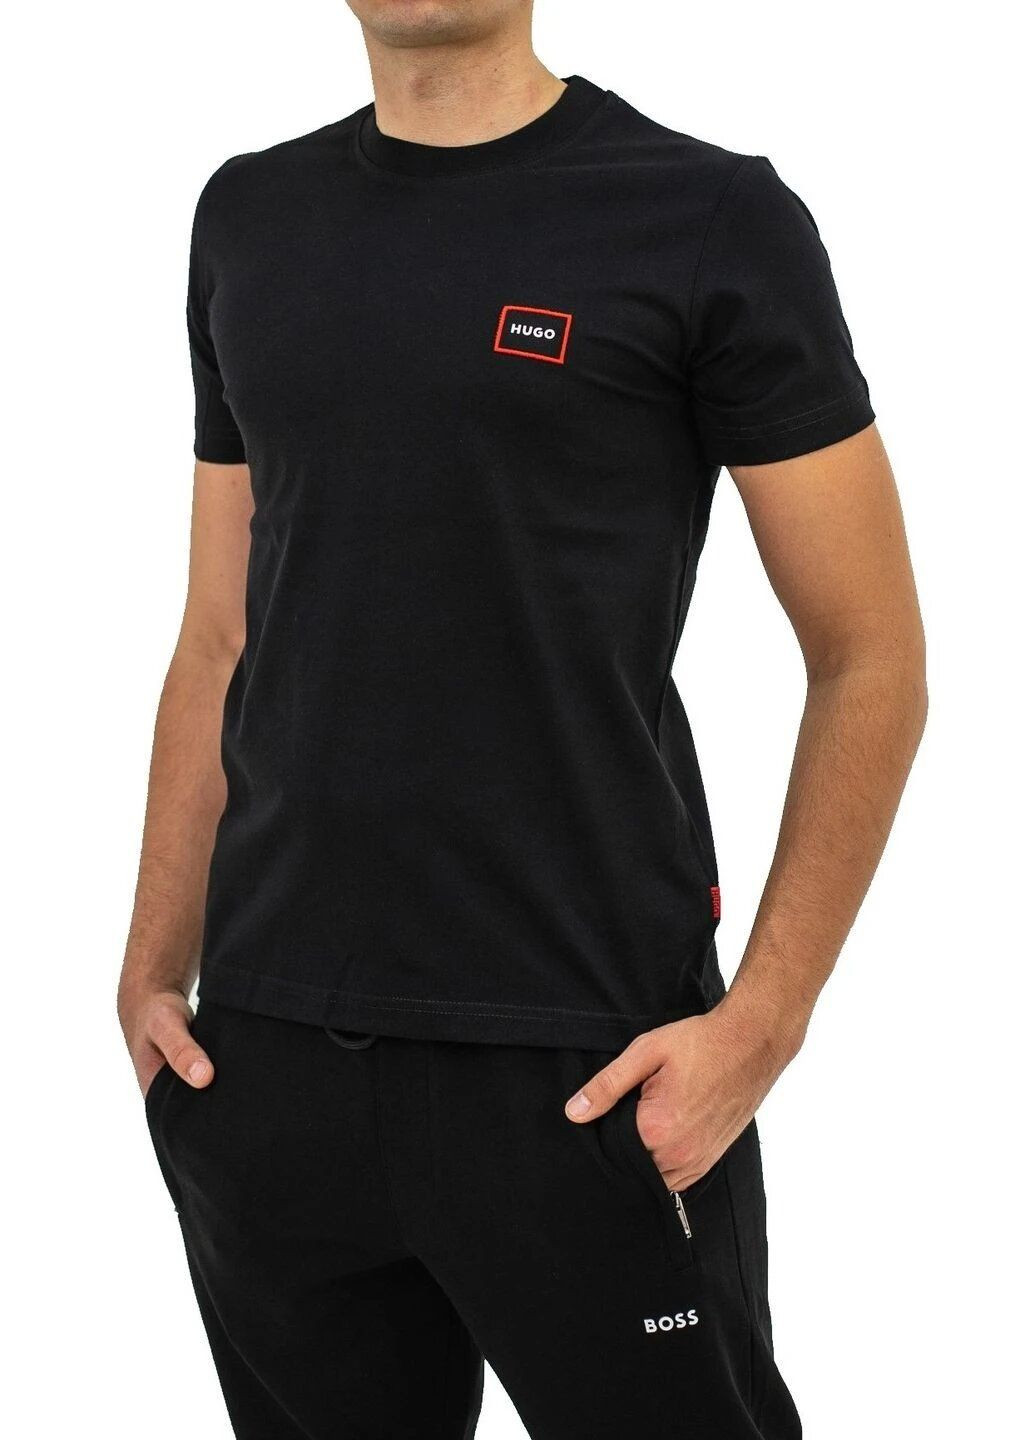 Черная футболка мужская с коротким рукавом Hugo Boss Logo Label Patch